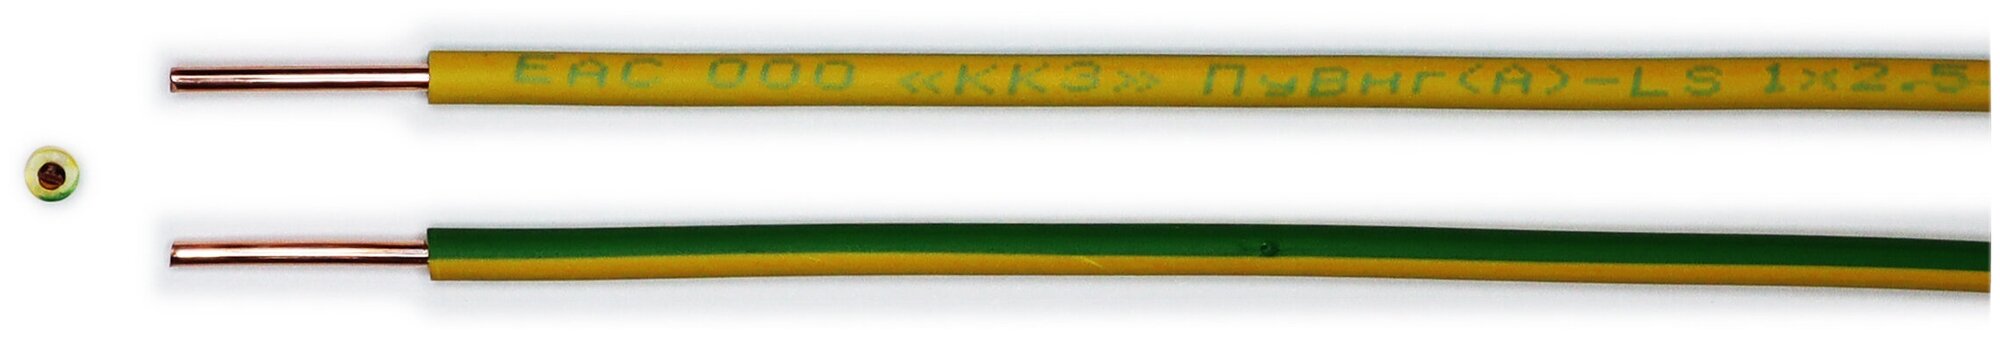 Провод ПуВ 1х2,5 ГОСТ Калужский кабельный завод. Желто-зелёный. 02 метра - фотография № 3